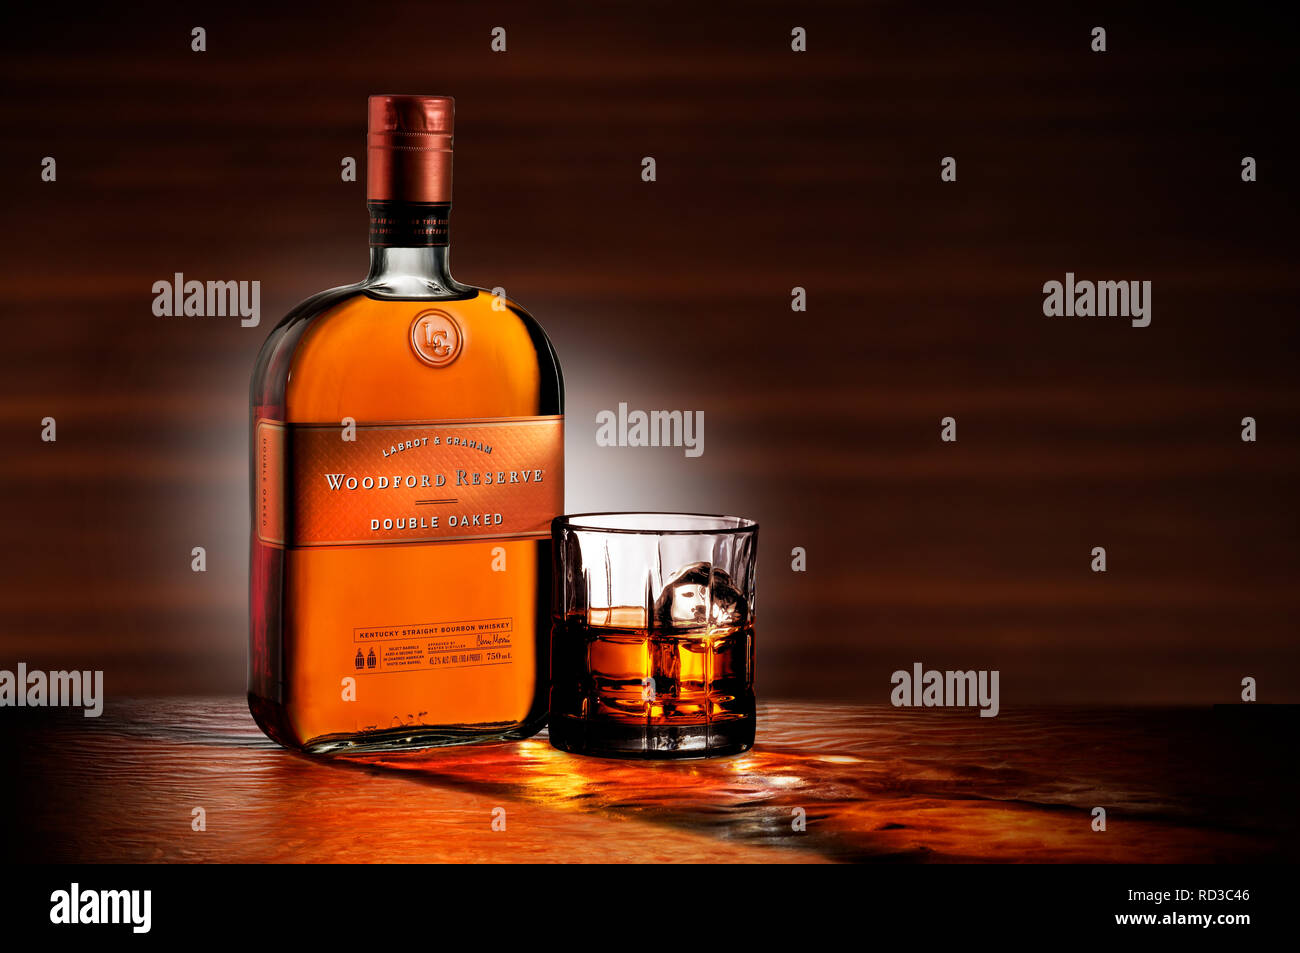 Image couleur de bouteille de whisky Woodford Reserve et un verre de whisky, studio shot Banque D'Images